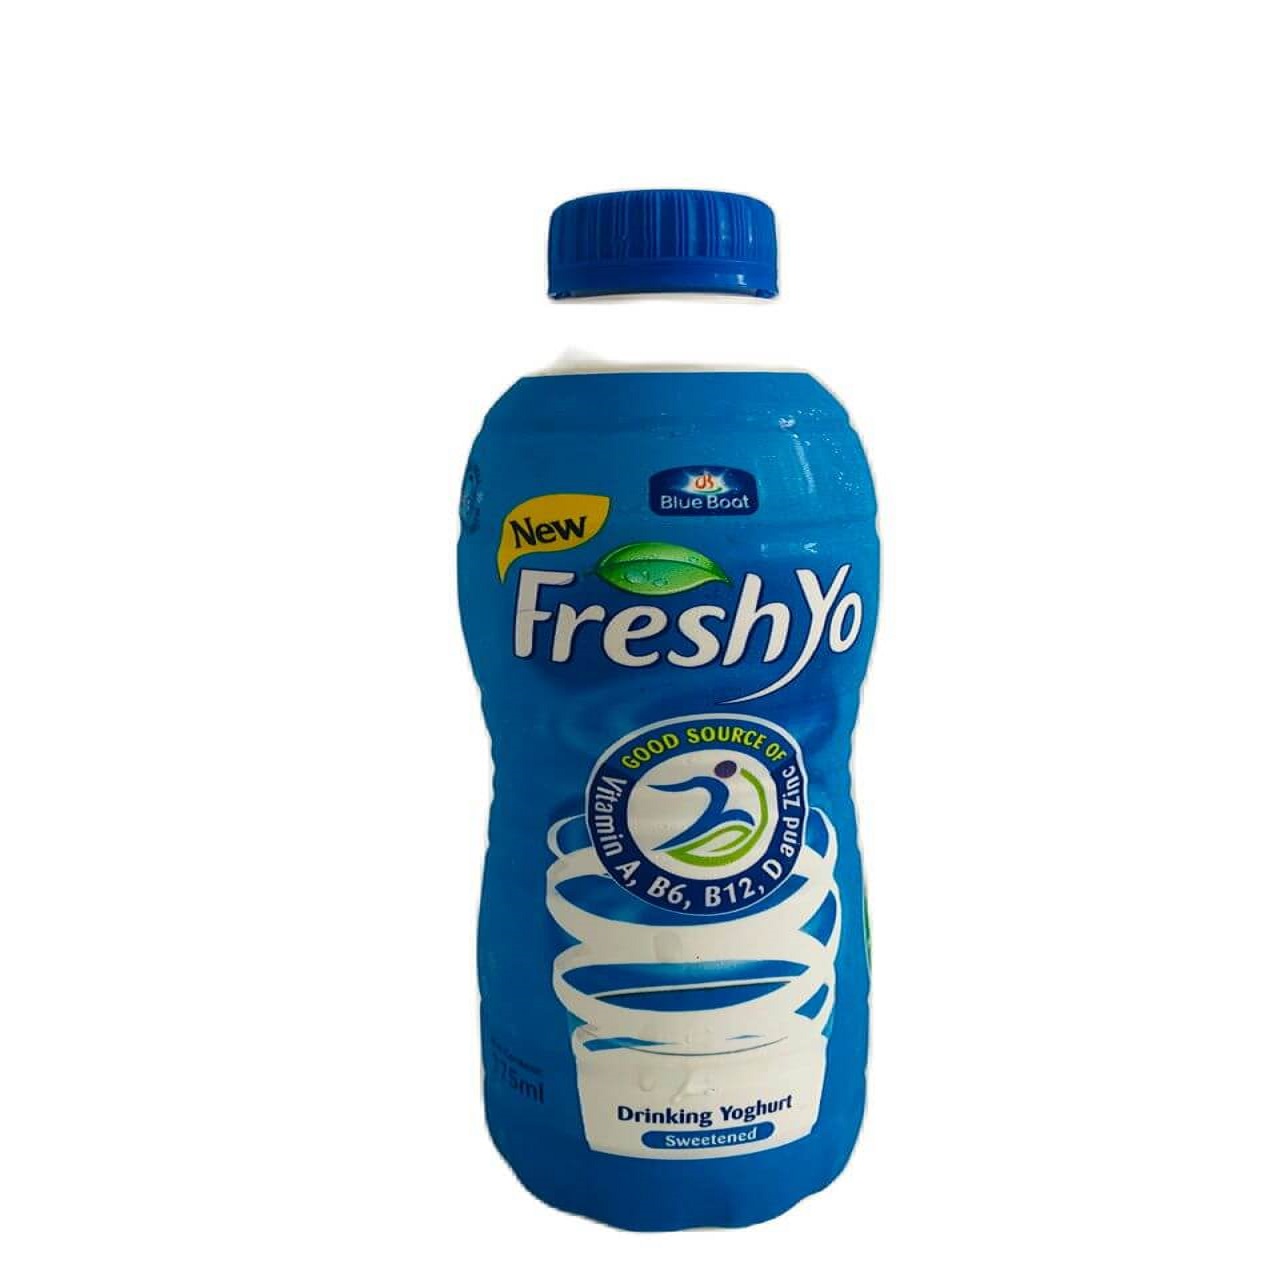 A 375ml bottle of freshyo yoghurt